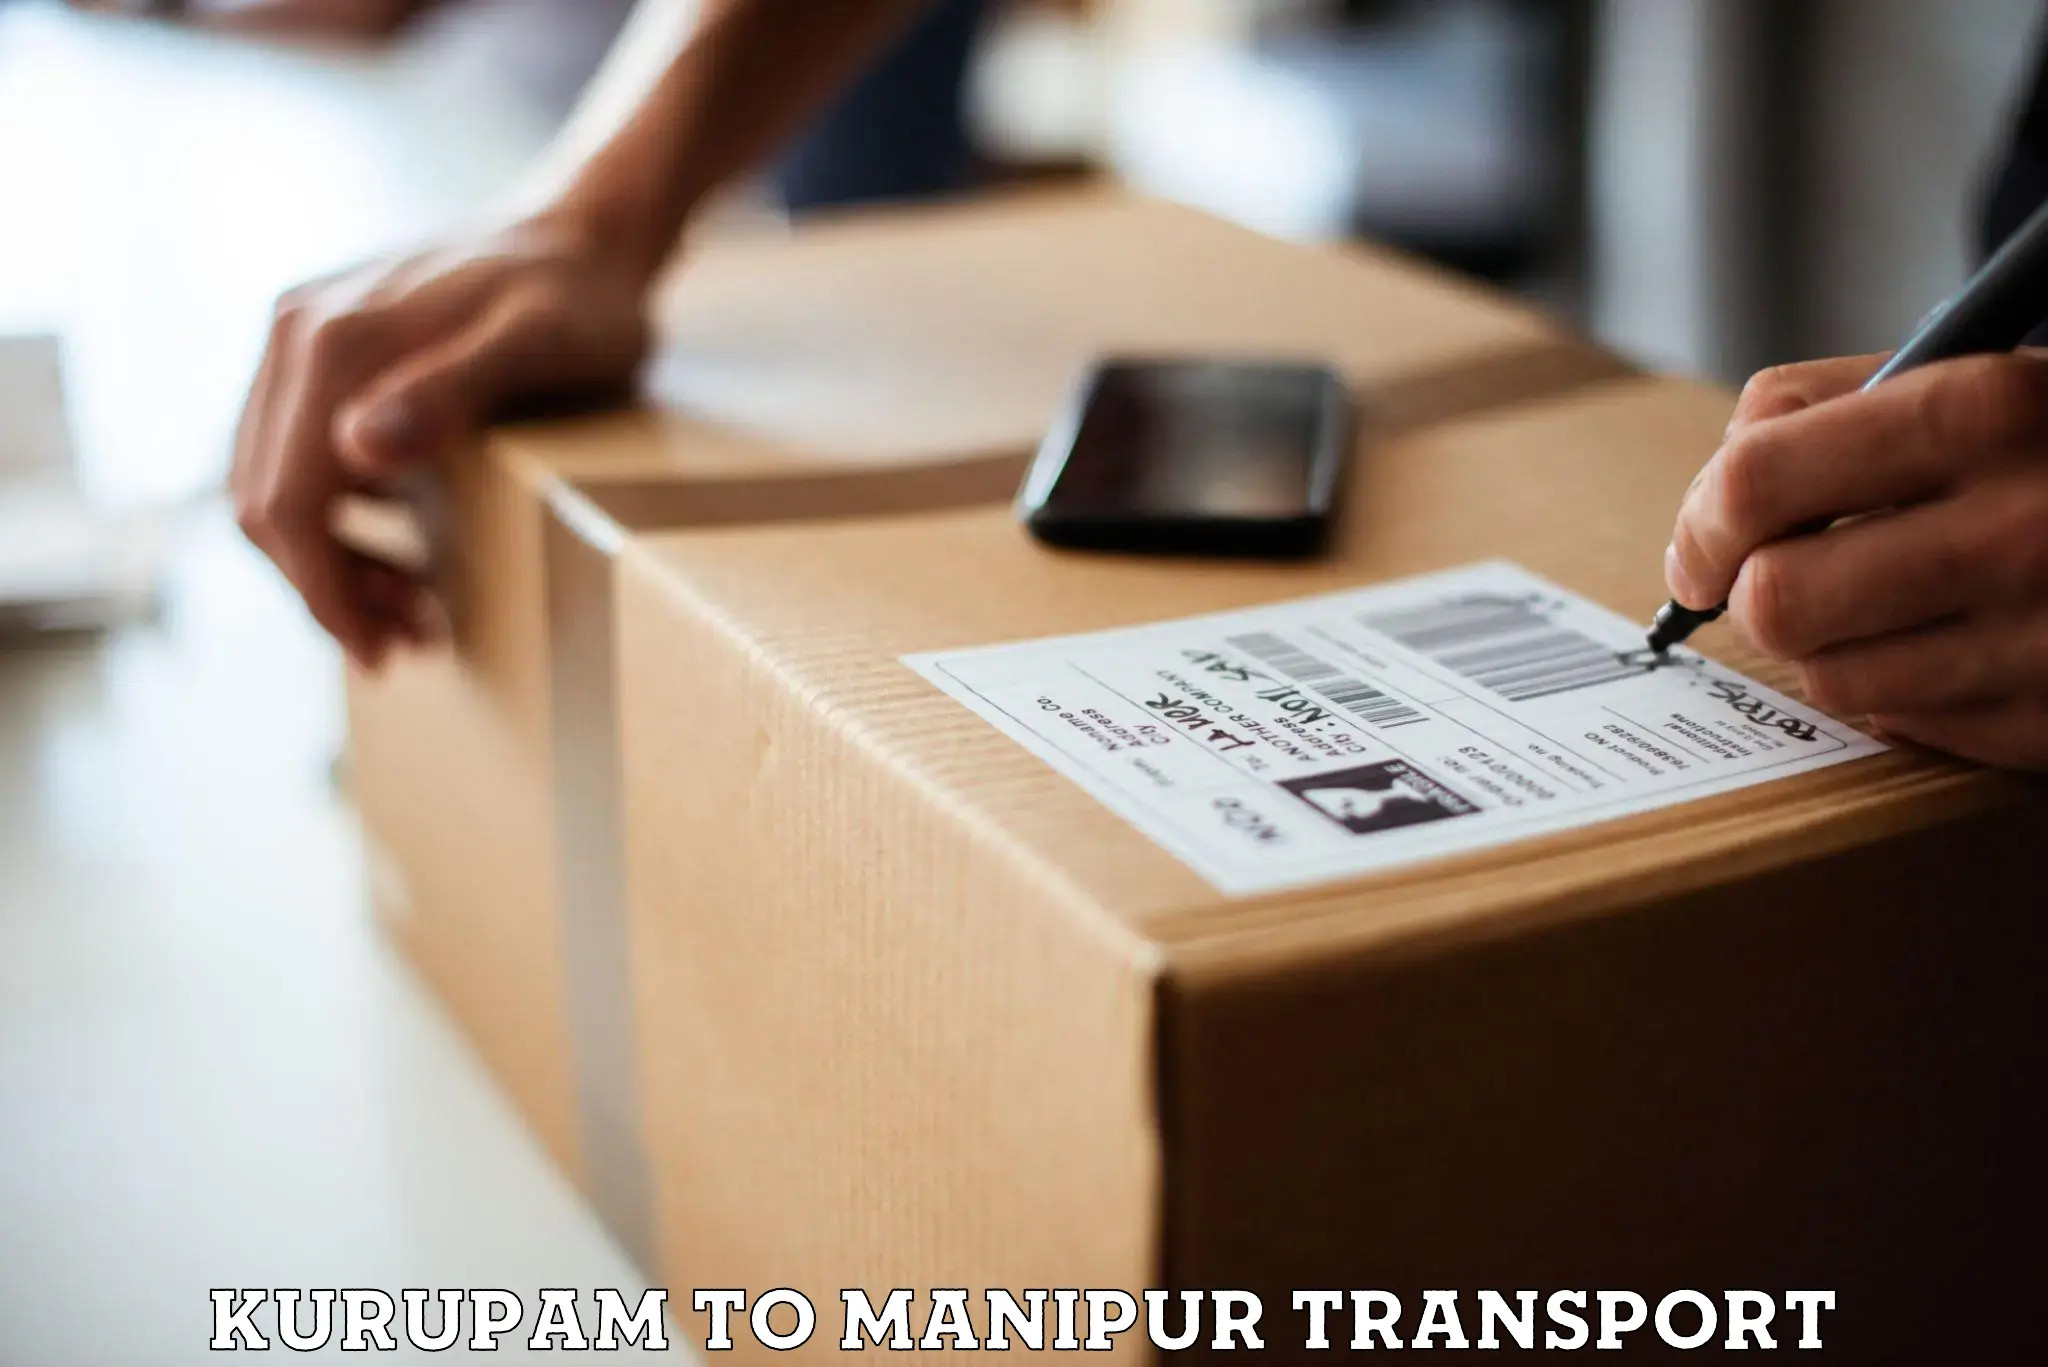 Furniture transport service Kurupam to NIT Manipur